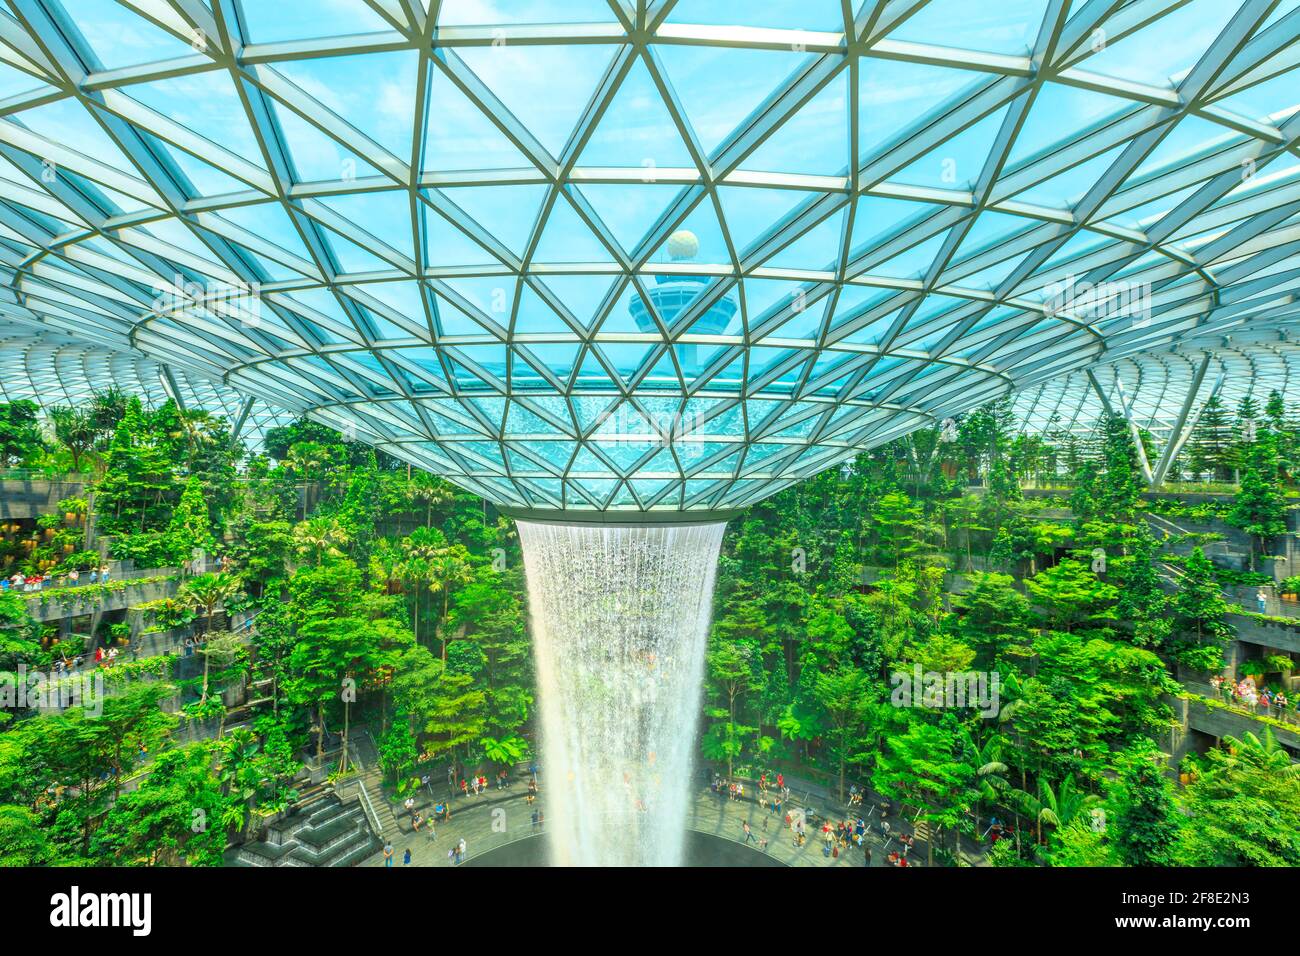 Singapour - 8 août 2019 : détails de Rain Vortex et dôme en verre, la plus grande chute d'eau intérieure du monde entourée d'une forêt mitoyenne de quatre étages Banque D'Images